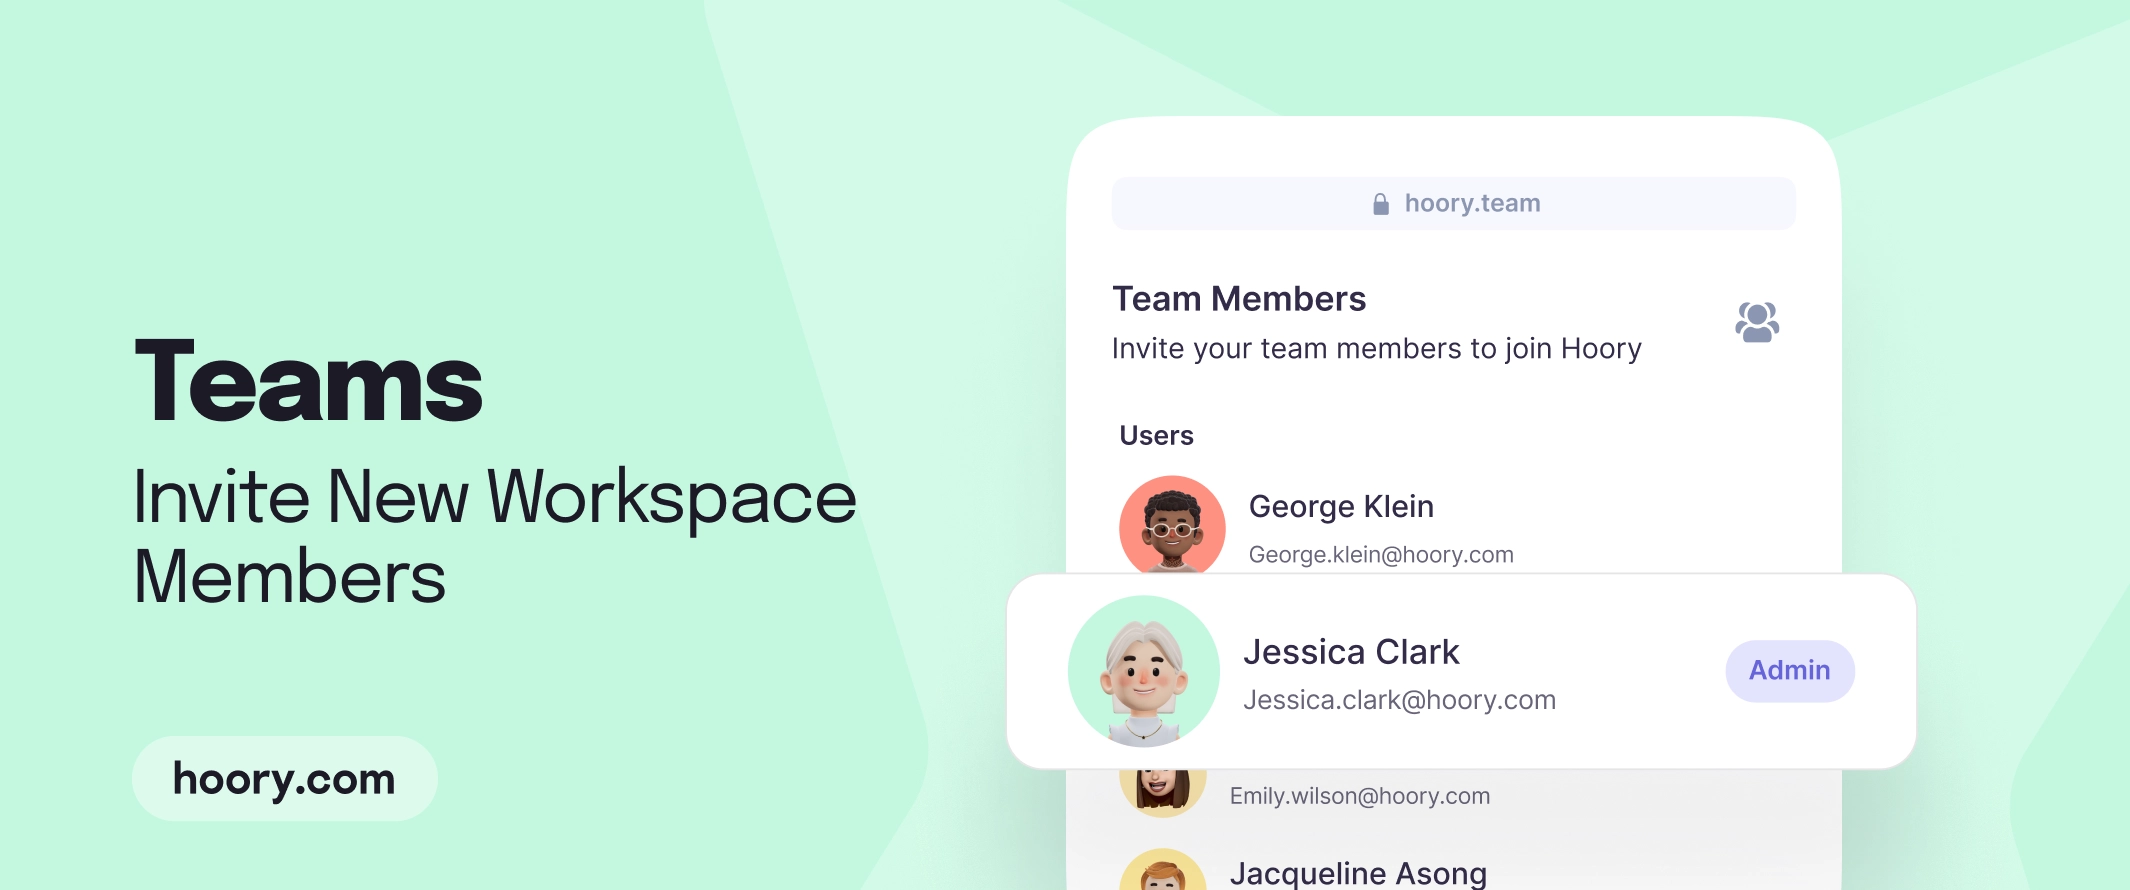 Teams: Invite New Workspace Members